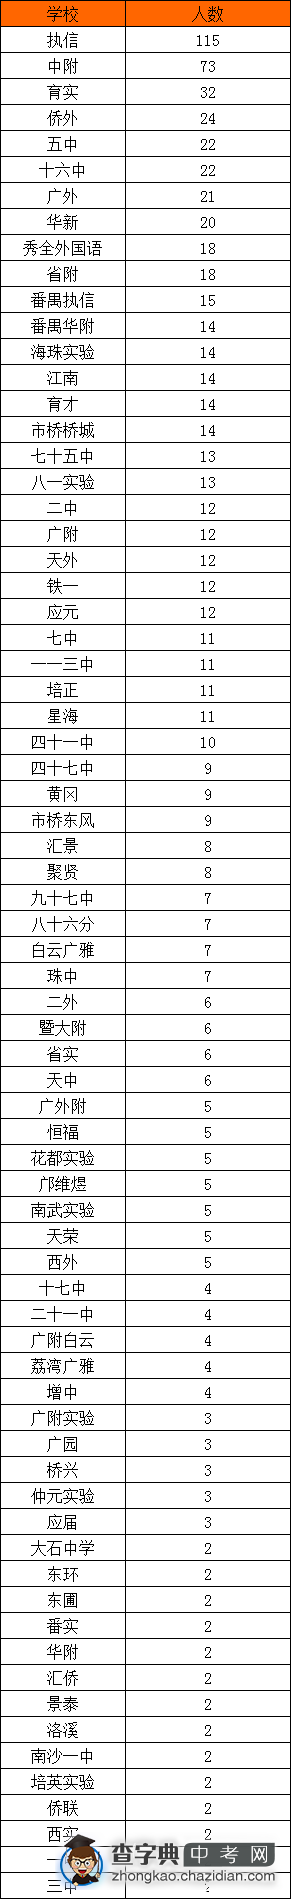 2015年广州执信新高一生源统计表（统计至2人）1